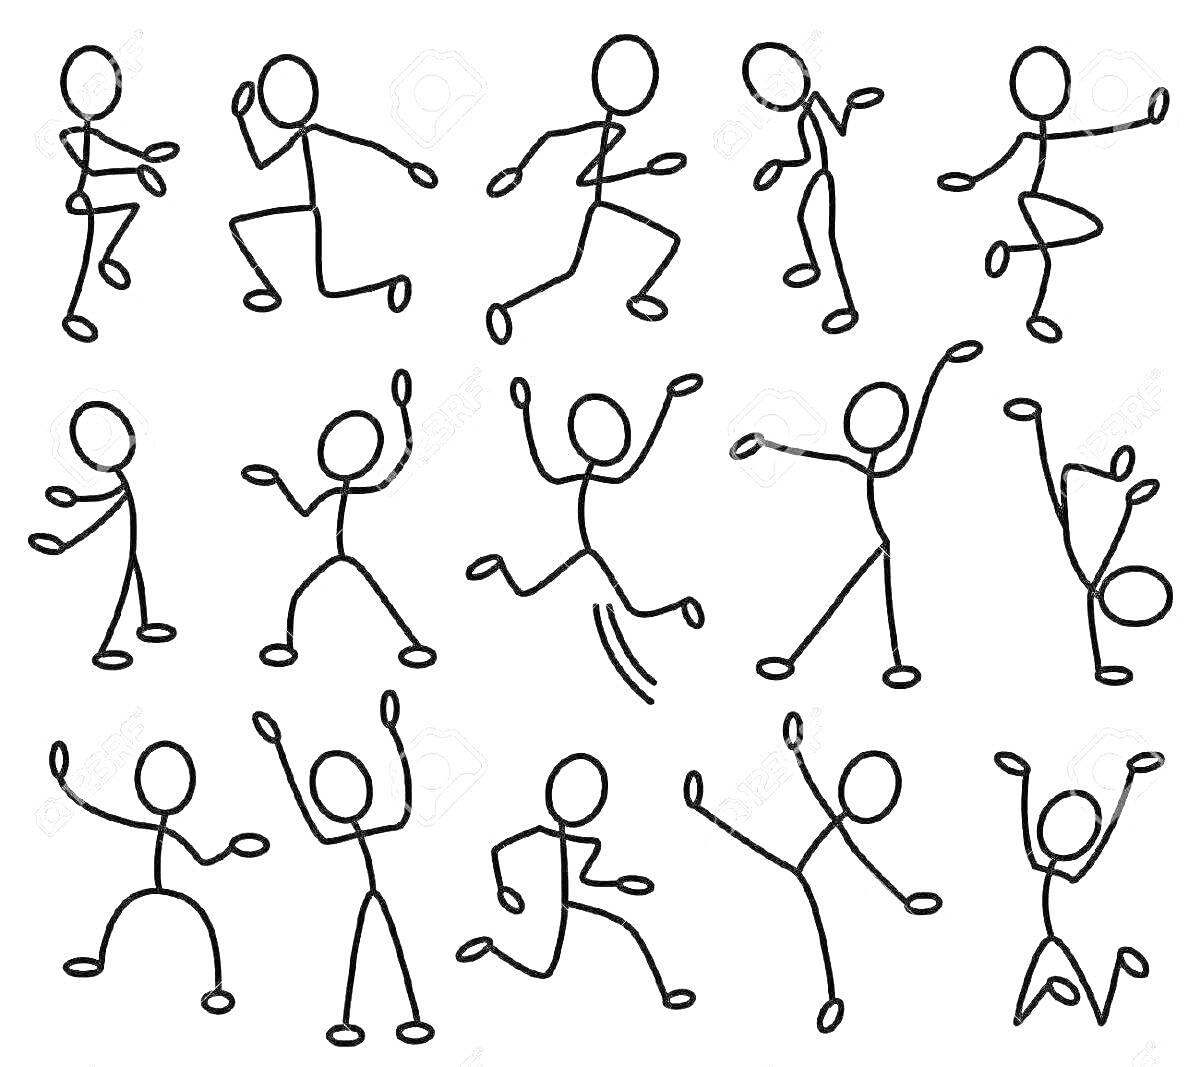 Раскраска Стикманы в различных позах - бег, прыжок, танец, радость, падение